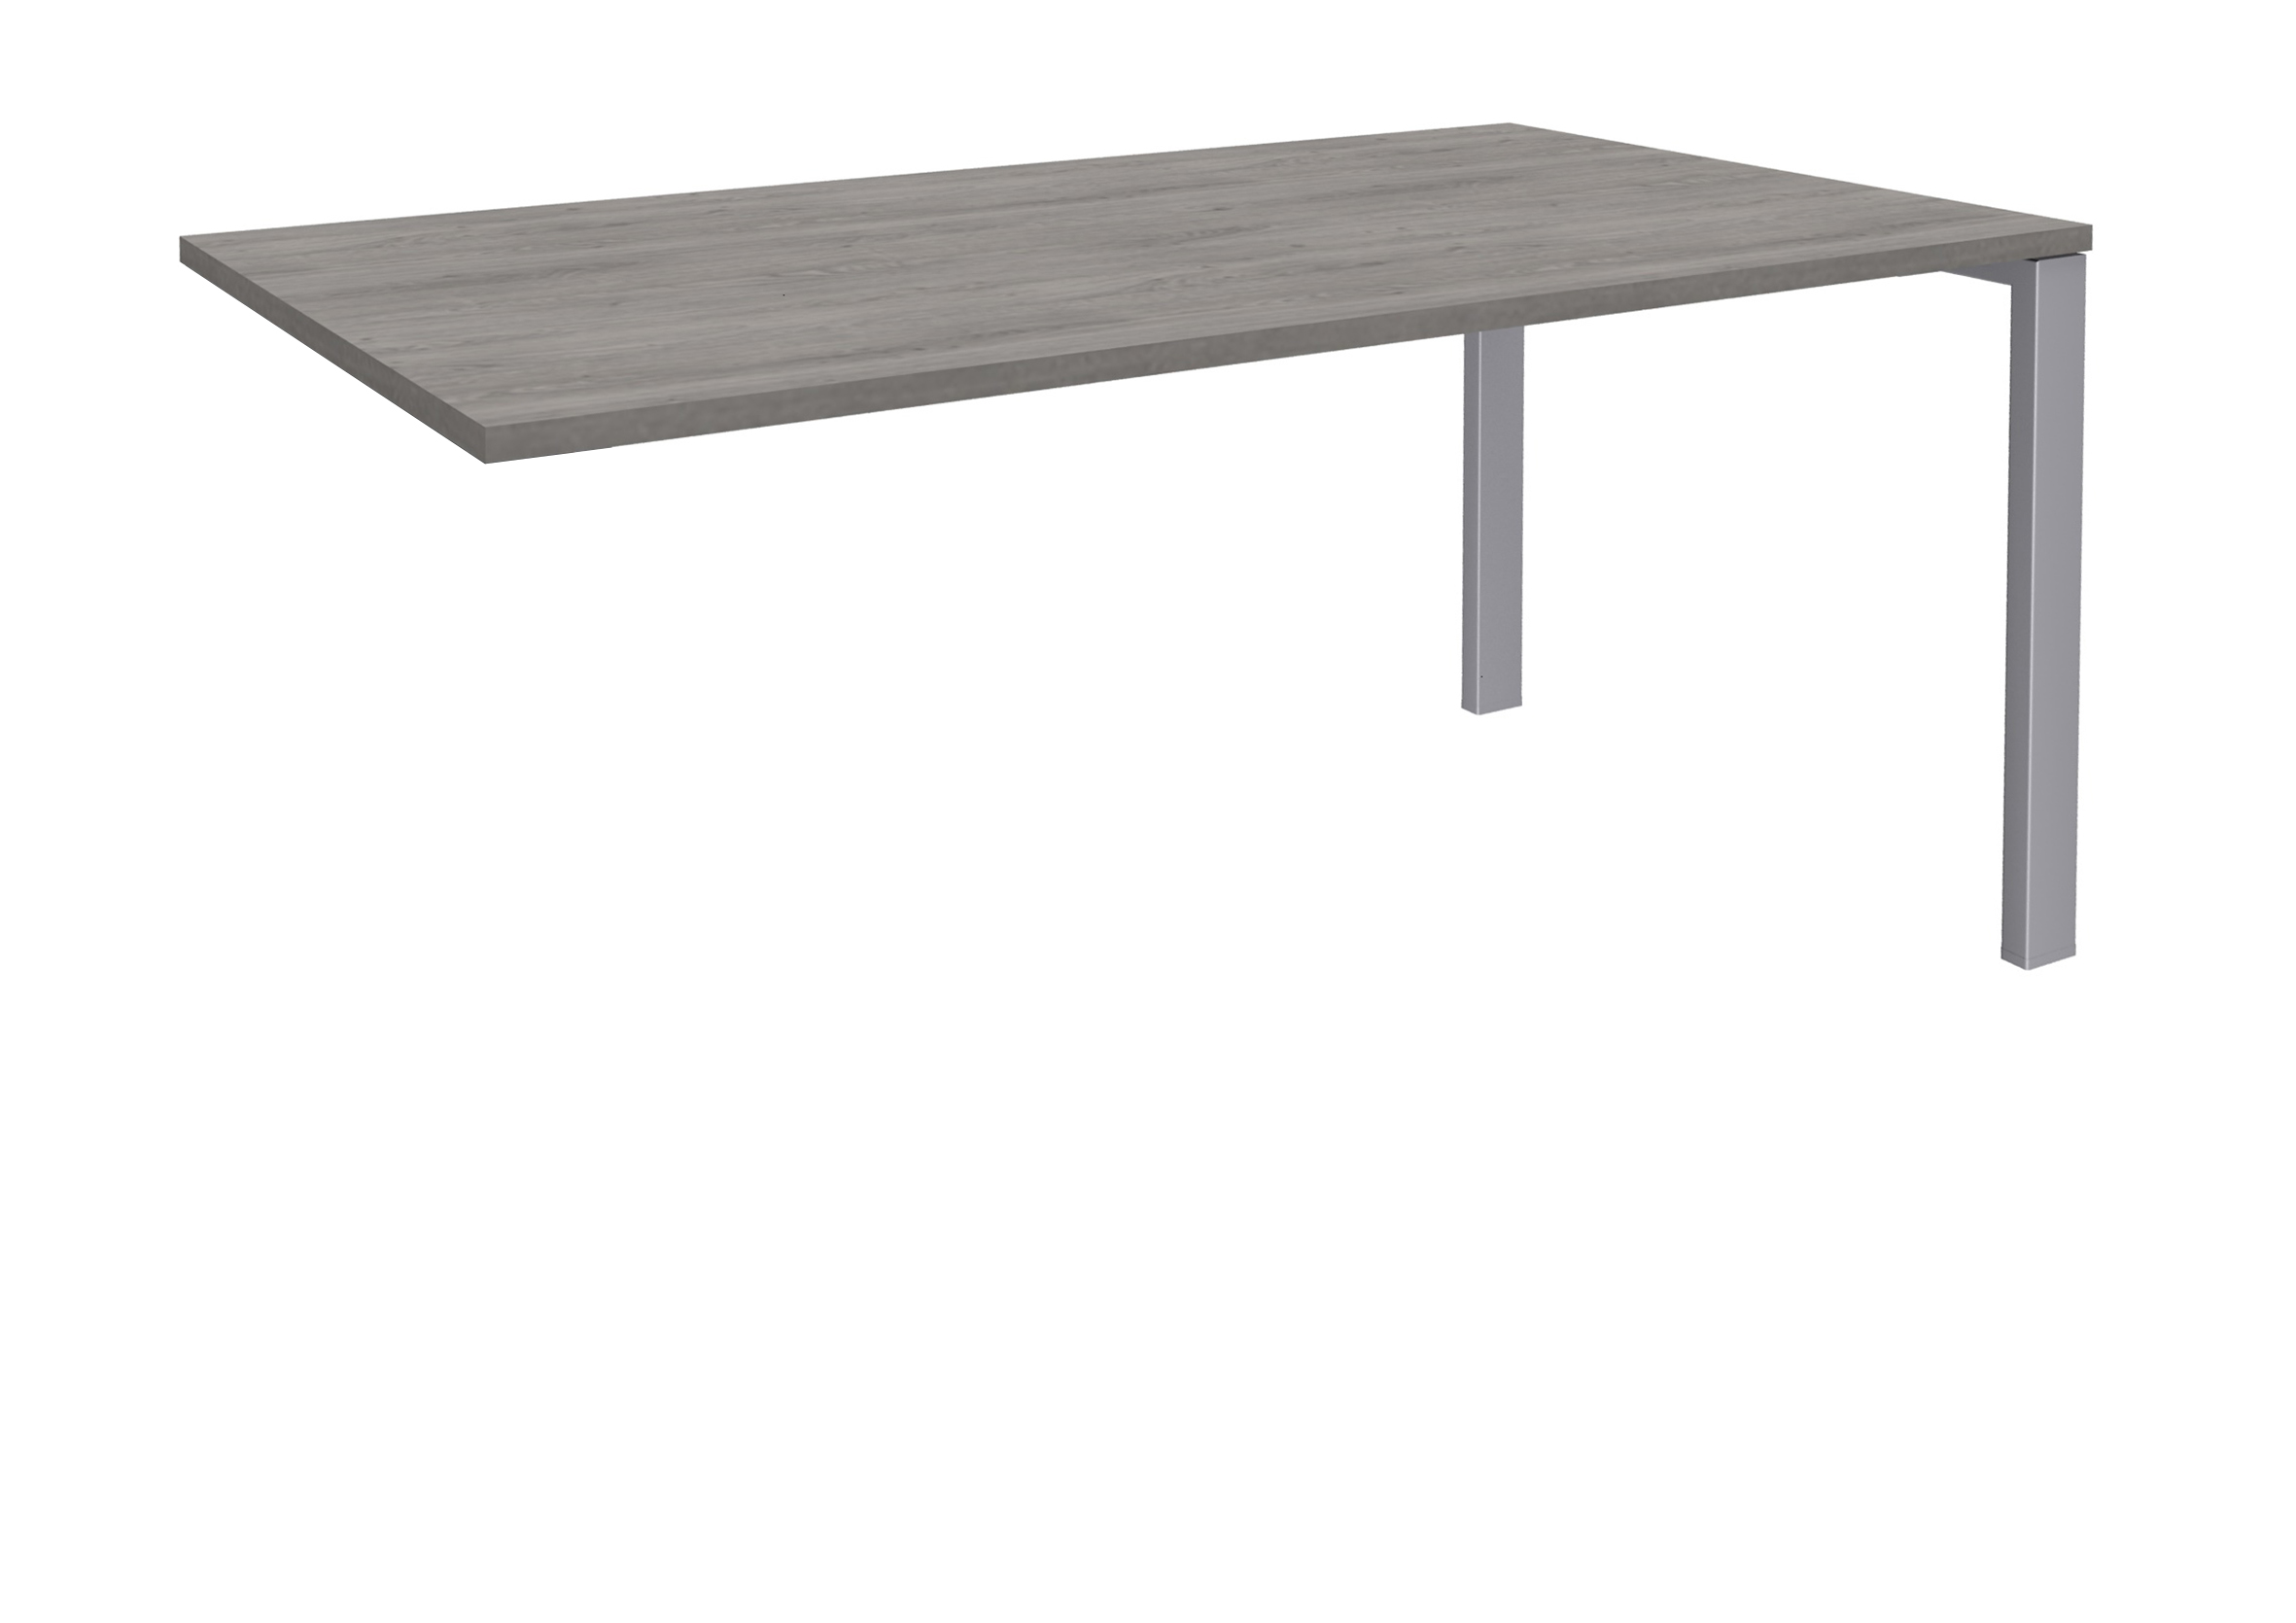 Bureau simple IRIS - L180 cm - Plan suivant - Pieds aluminium - plateau imitation Chêne gris